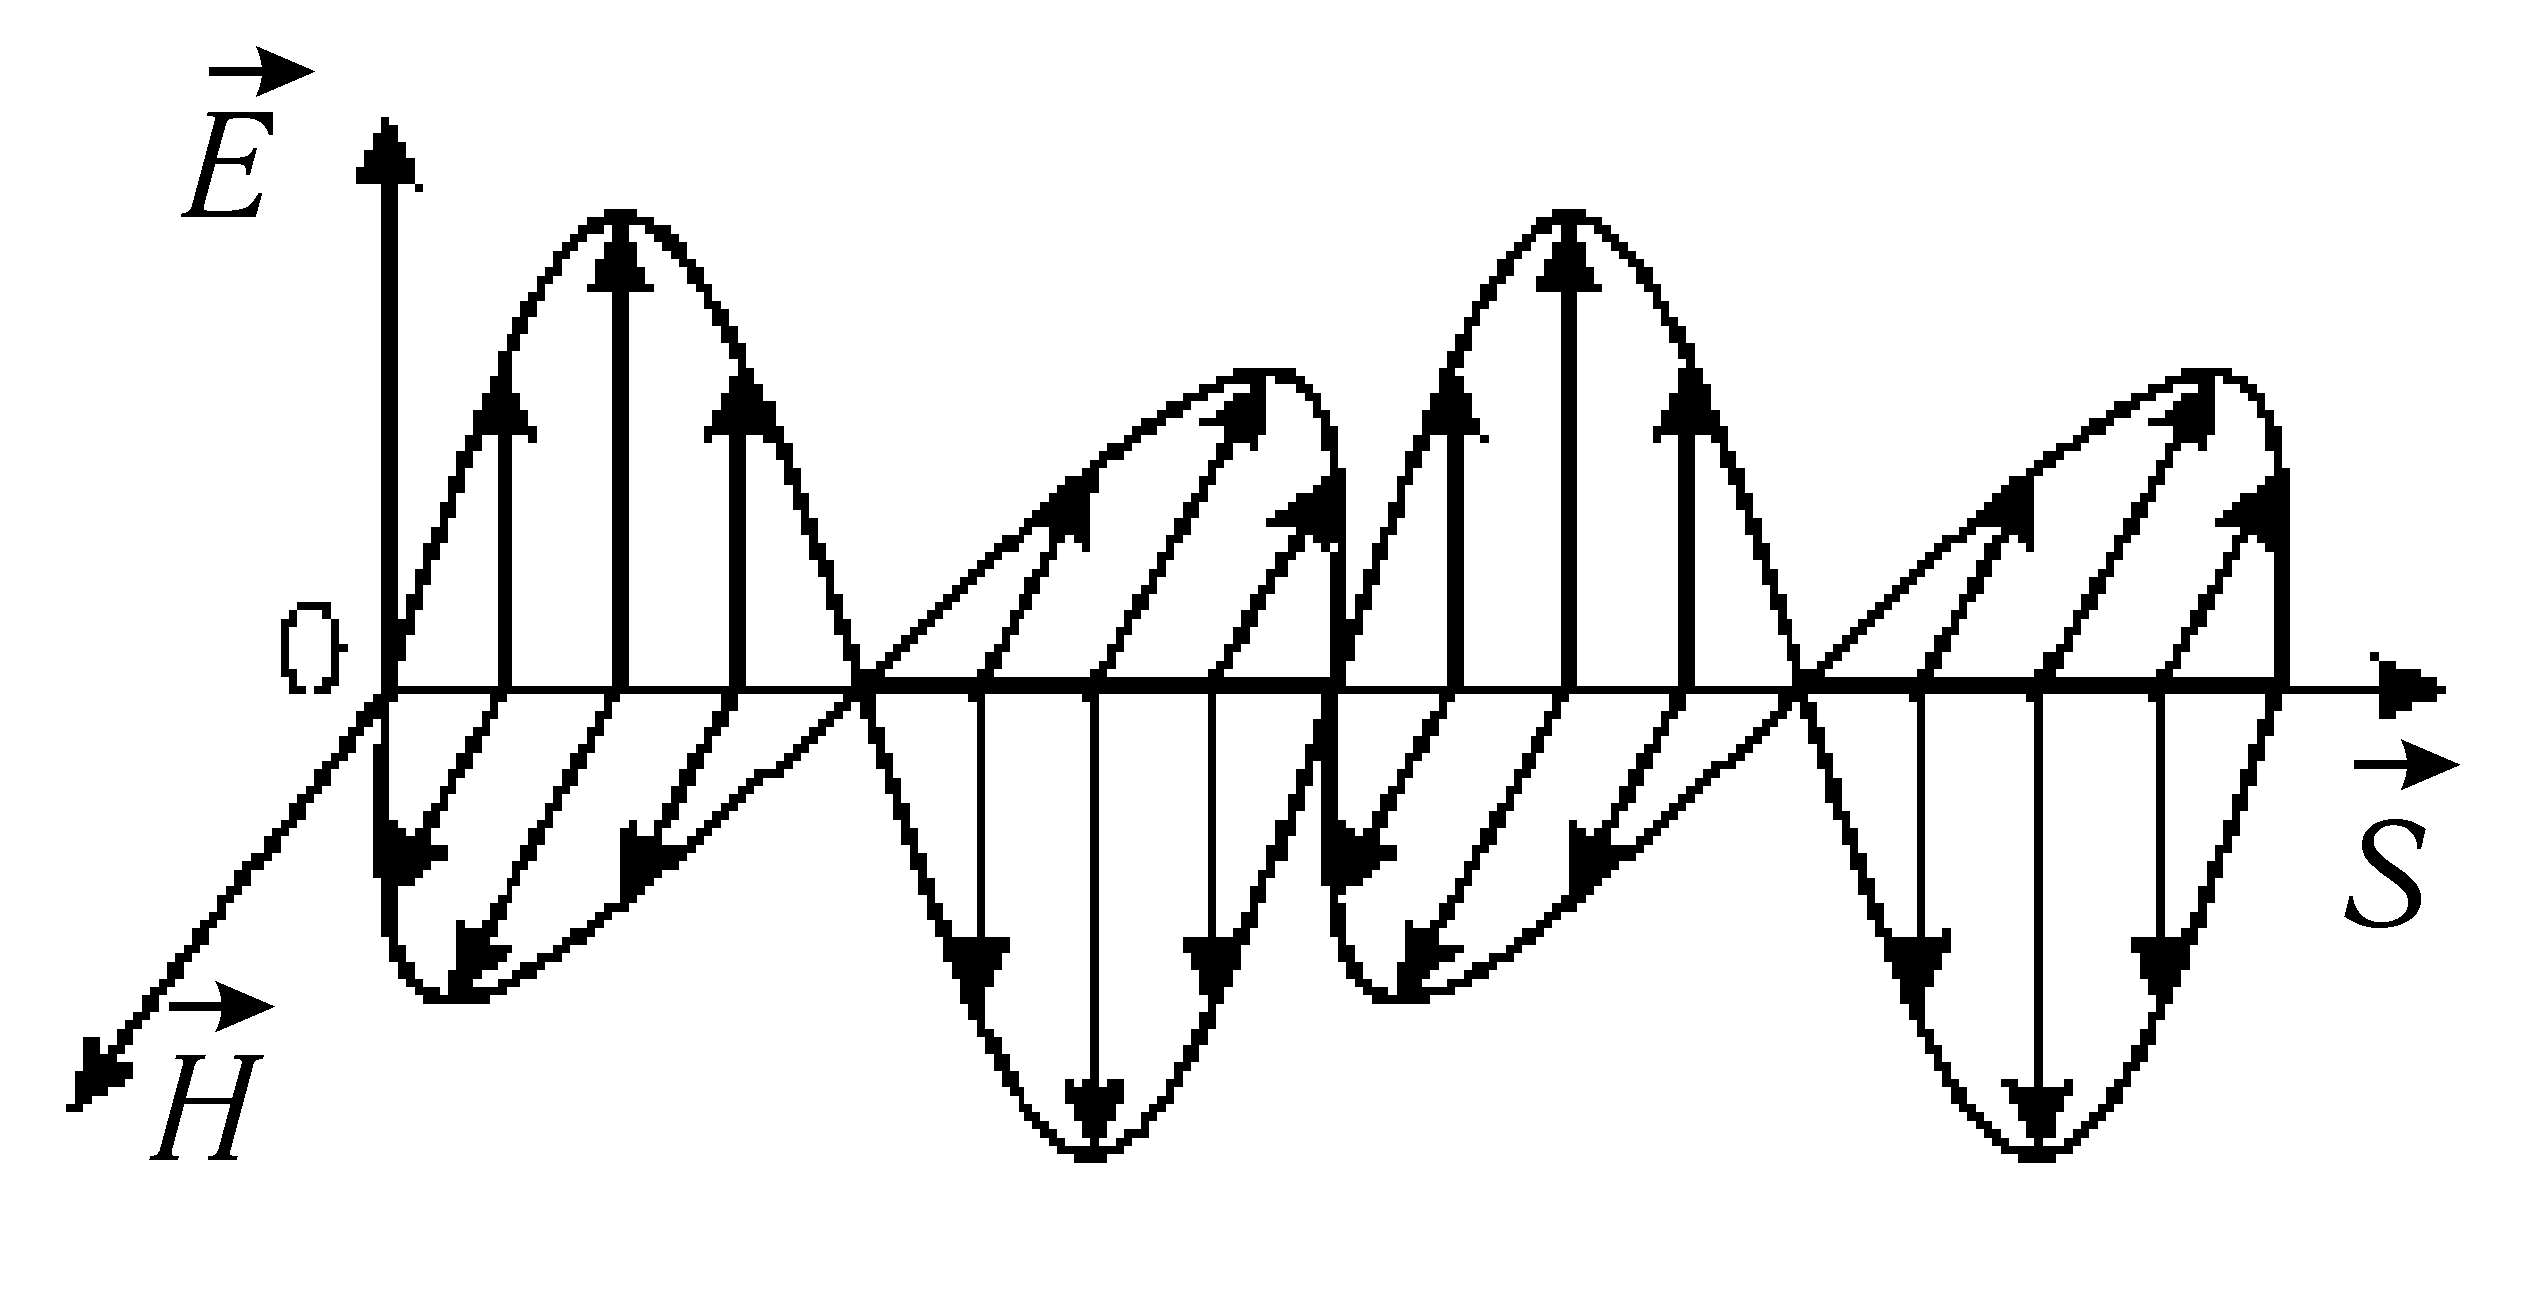 Бегущая электромагнитная волна. Рис. 154 модель электромагнитной волны. Вектор Пойнтинга в волноводе. Плоская электромагнитная волна вектор Пойнтинга. Электромагнитная волна анимация.